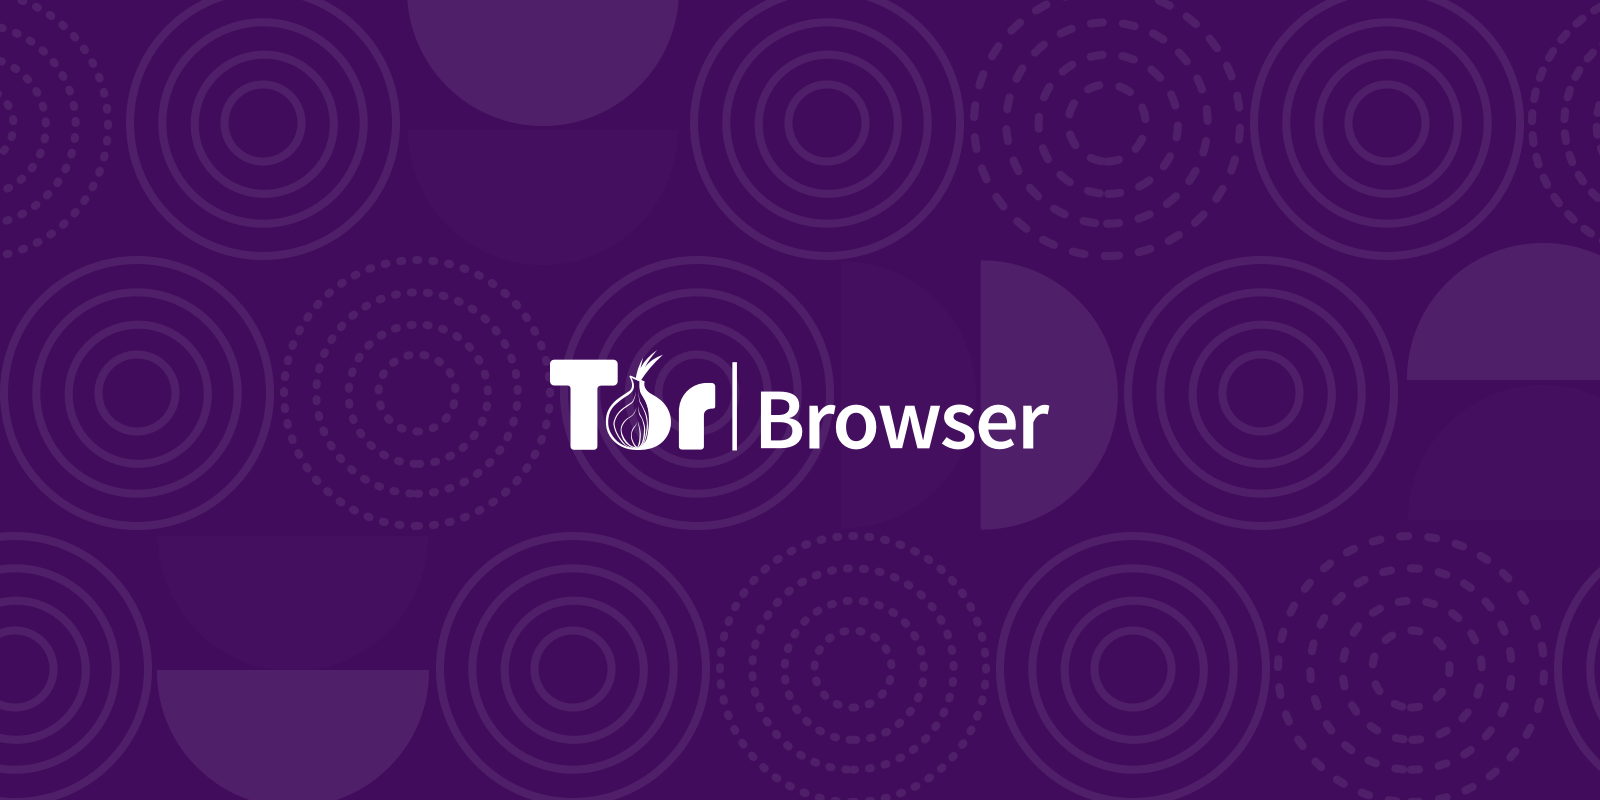 Tor browser for linux 64 bit mega ubuntu darknet mega